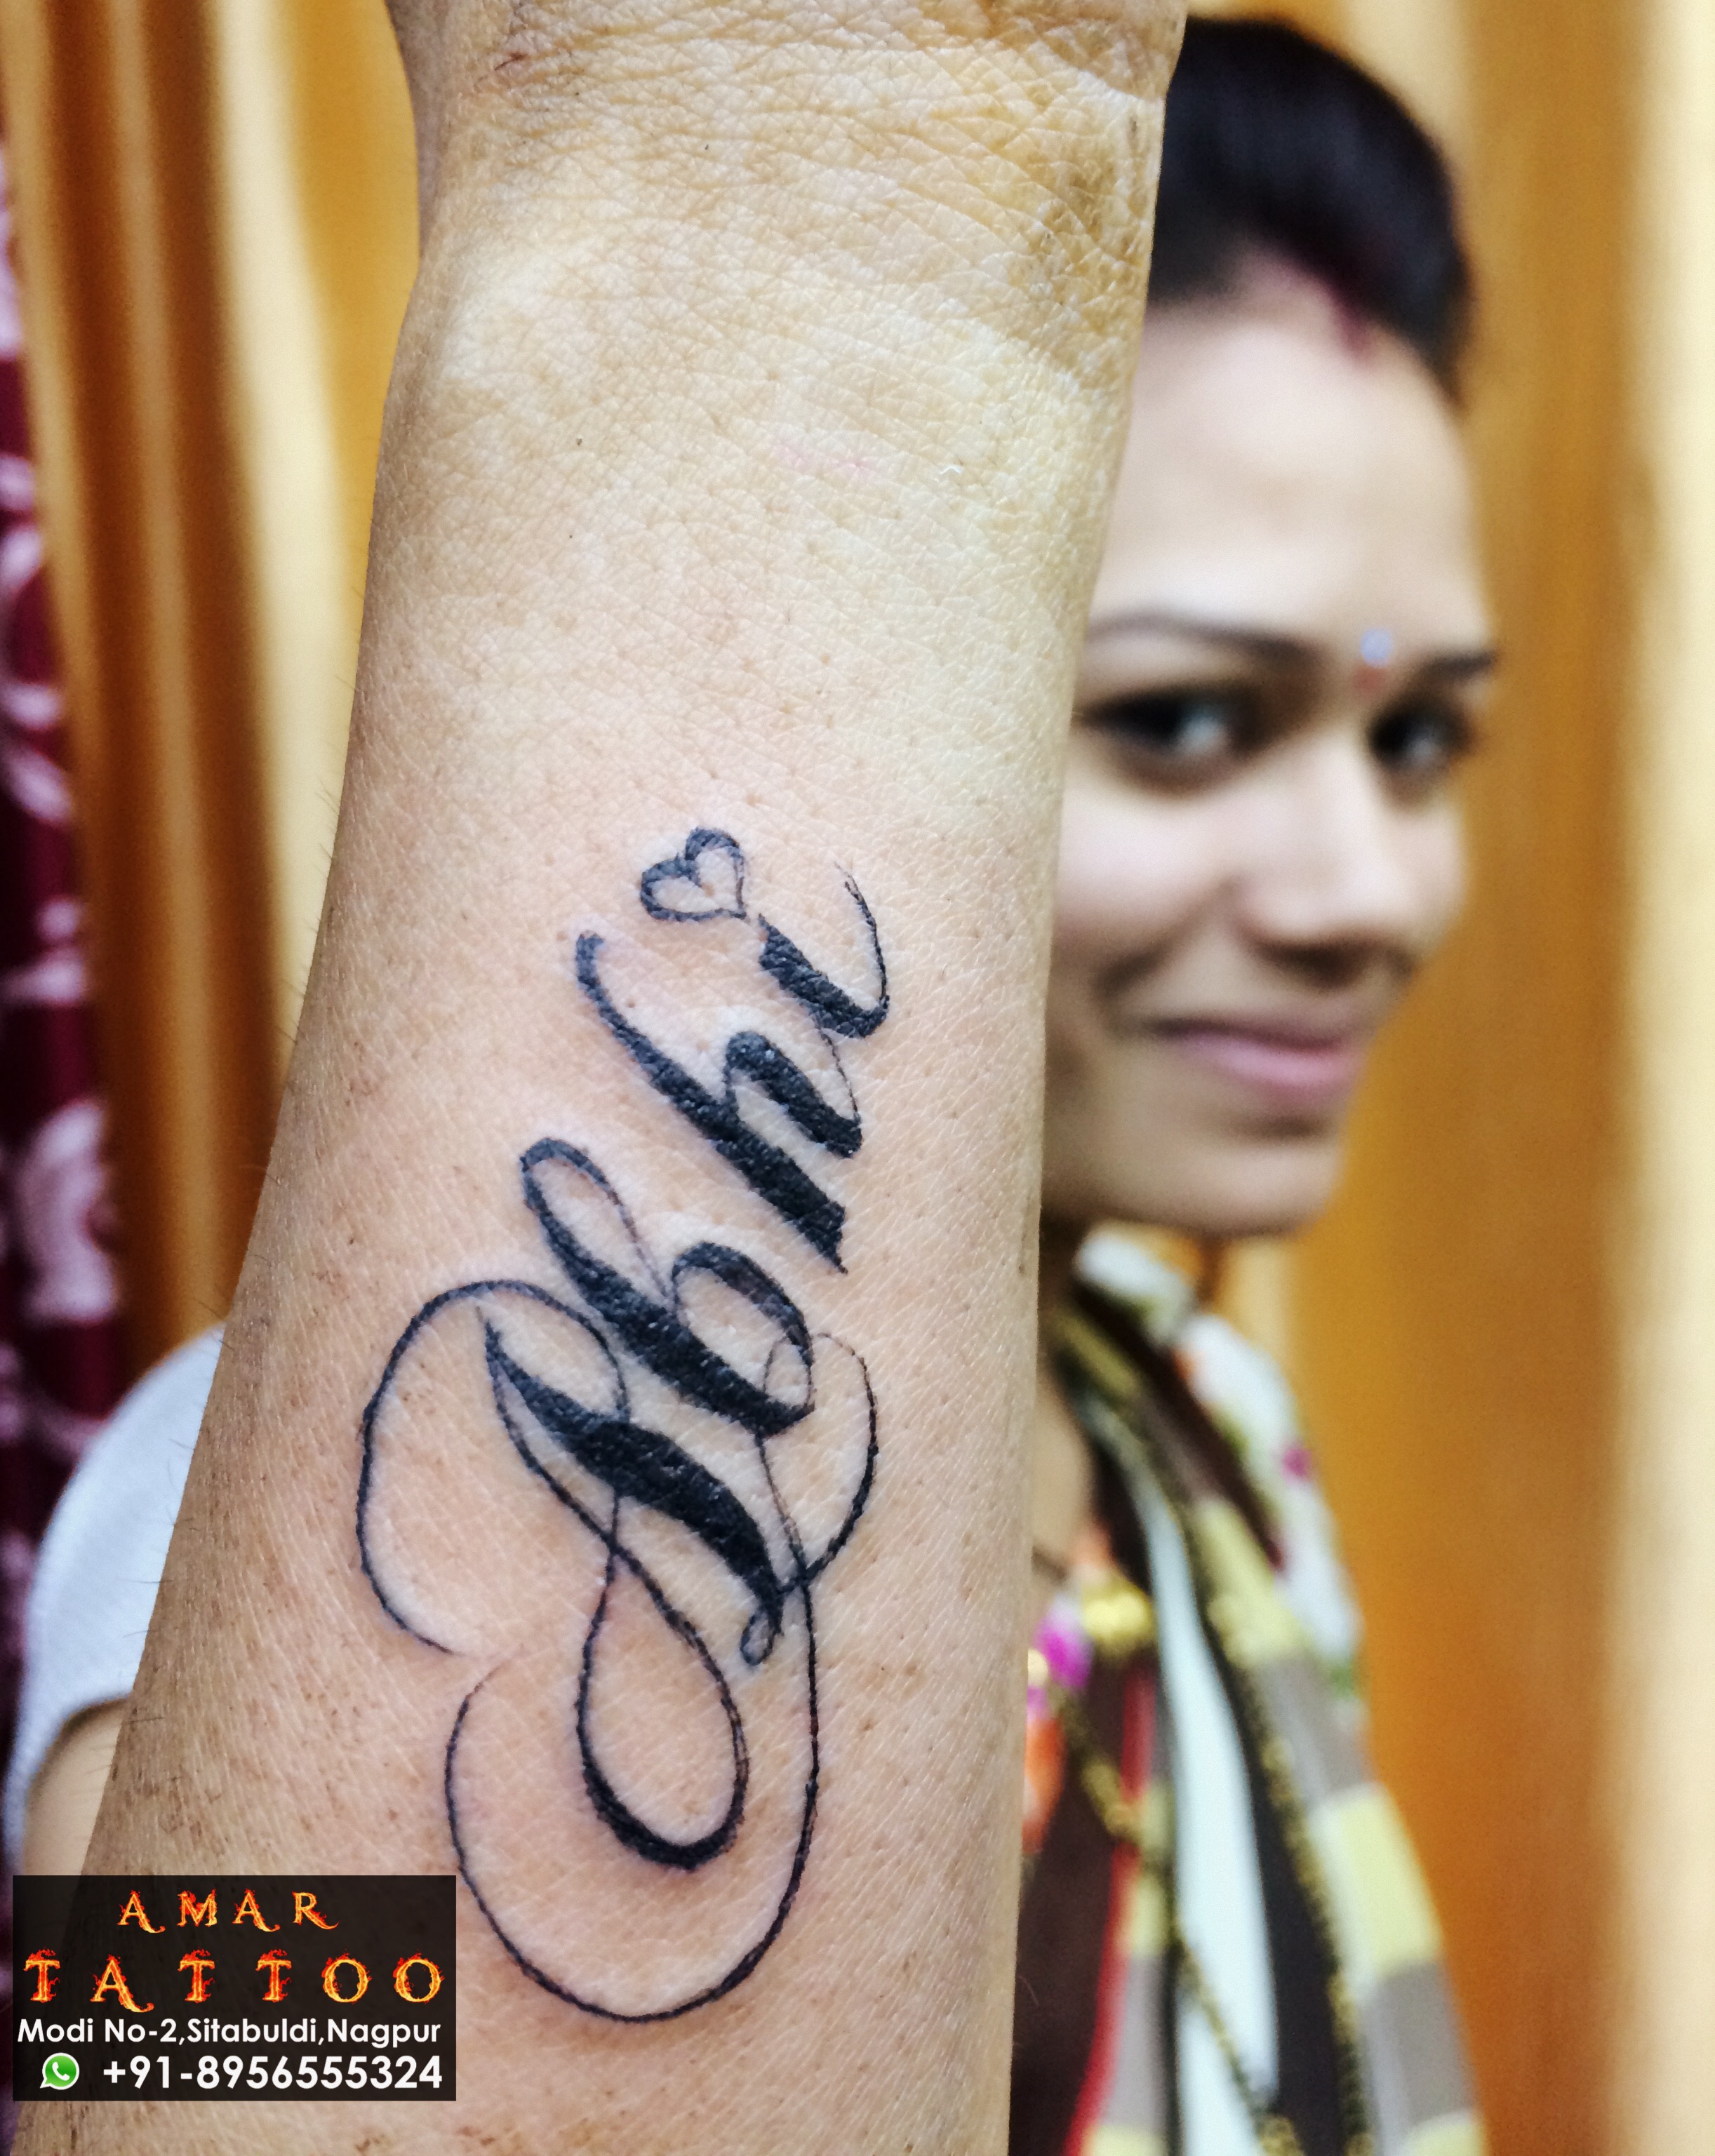 Amar name tattoo | Baby tattoo designs, Geometric tattoo hand, Tattoo  lettering